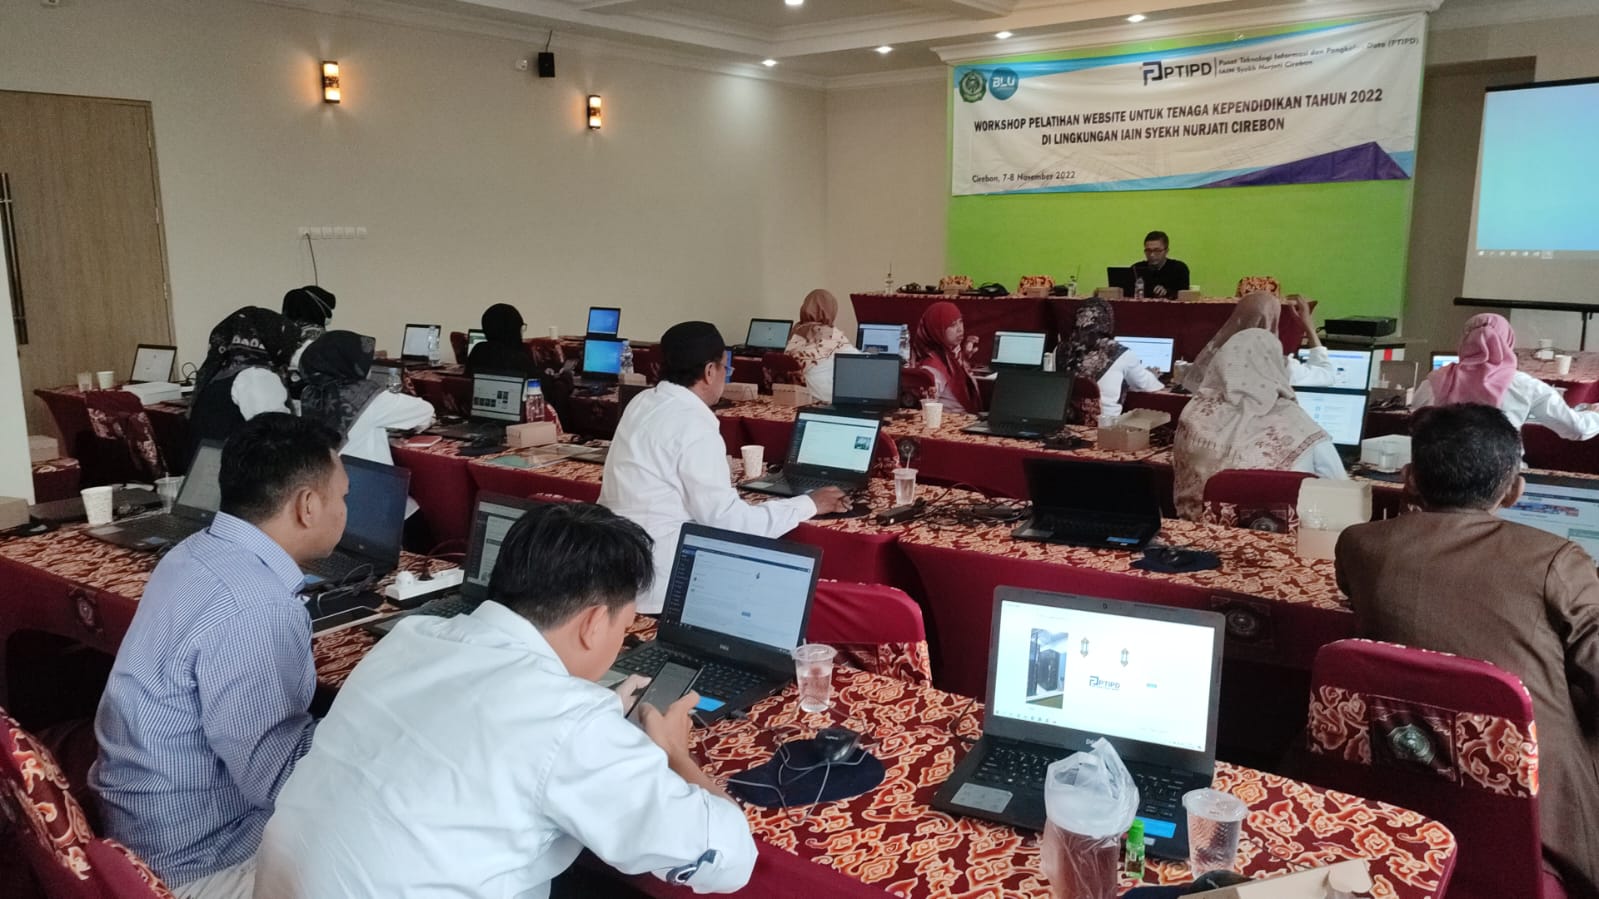 Workshop Pelatihan Website untuk Tenaga Kependidikan Tahun 2022 di Lingkungan IAIN Syekh Nurjati Cirebon